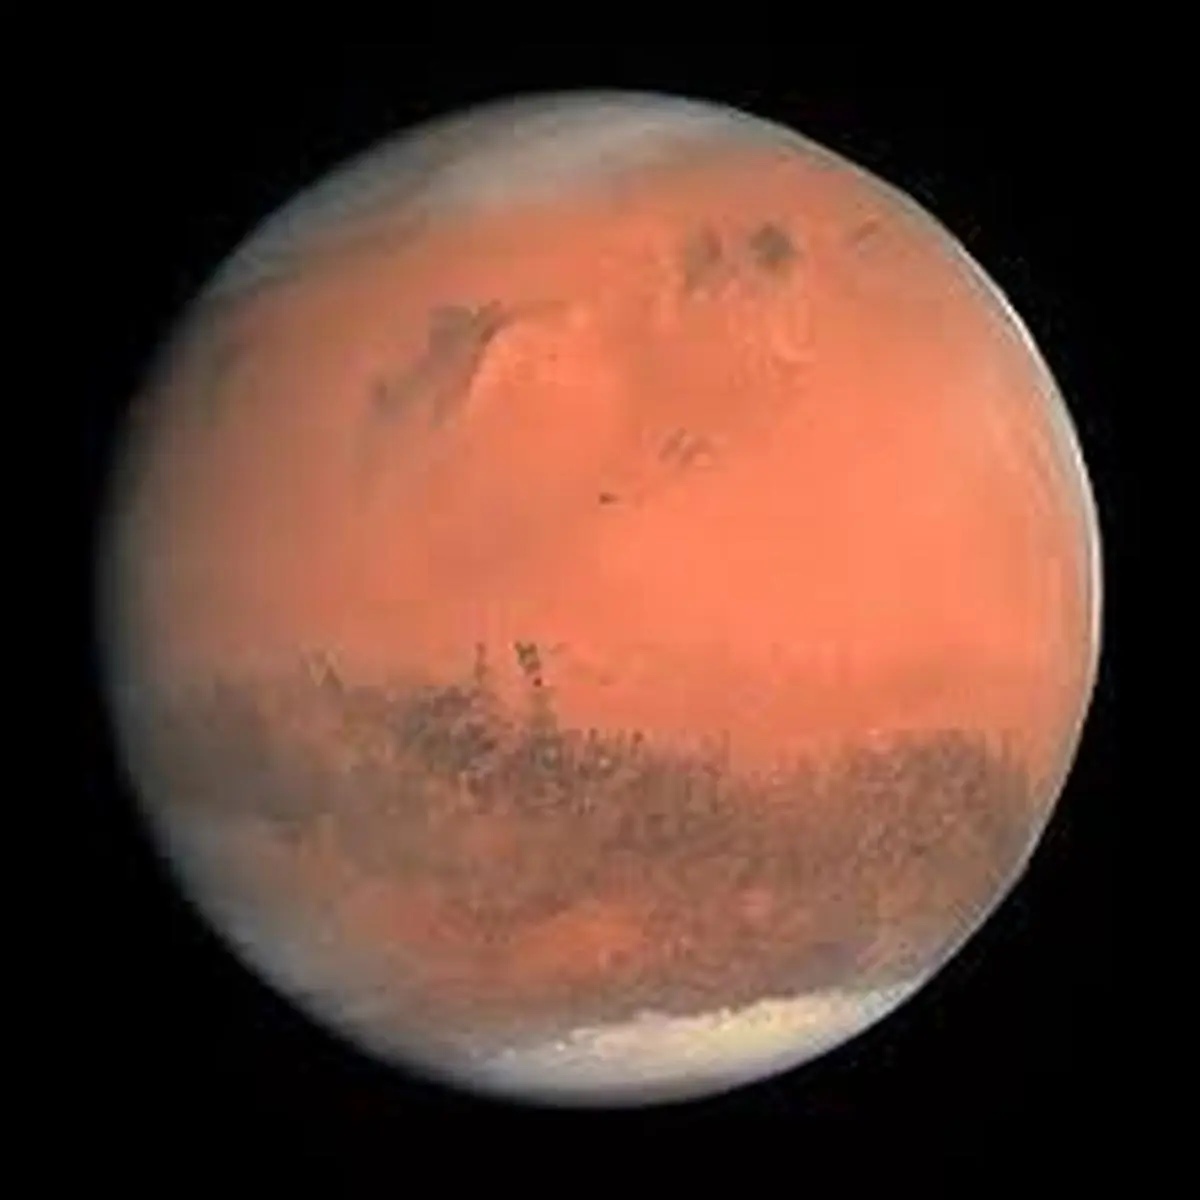  کشف طلای سرخ رنگ در مریخ +فیلم